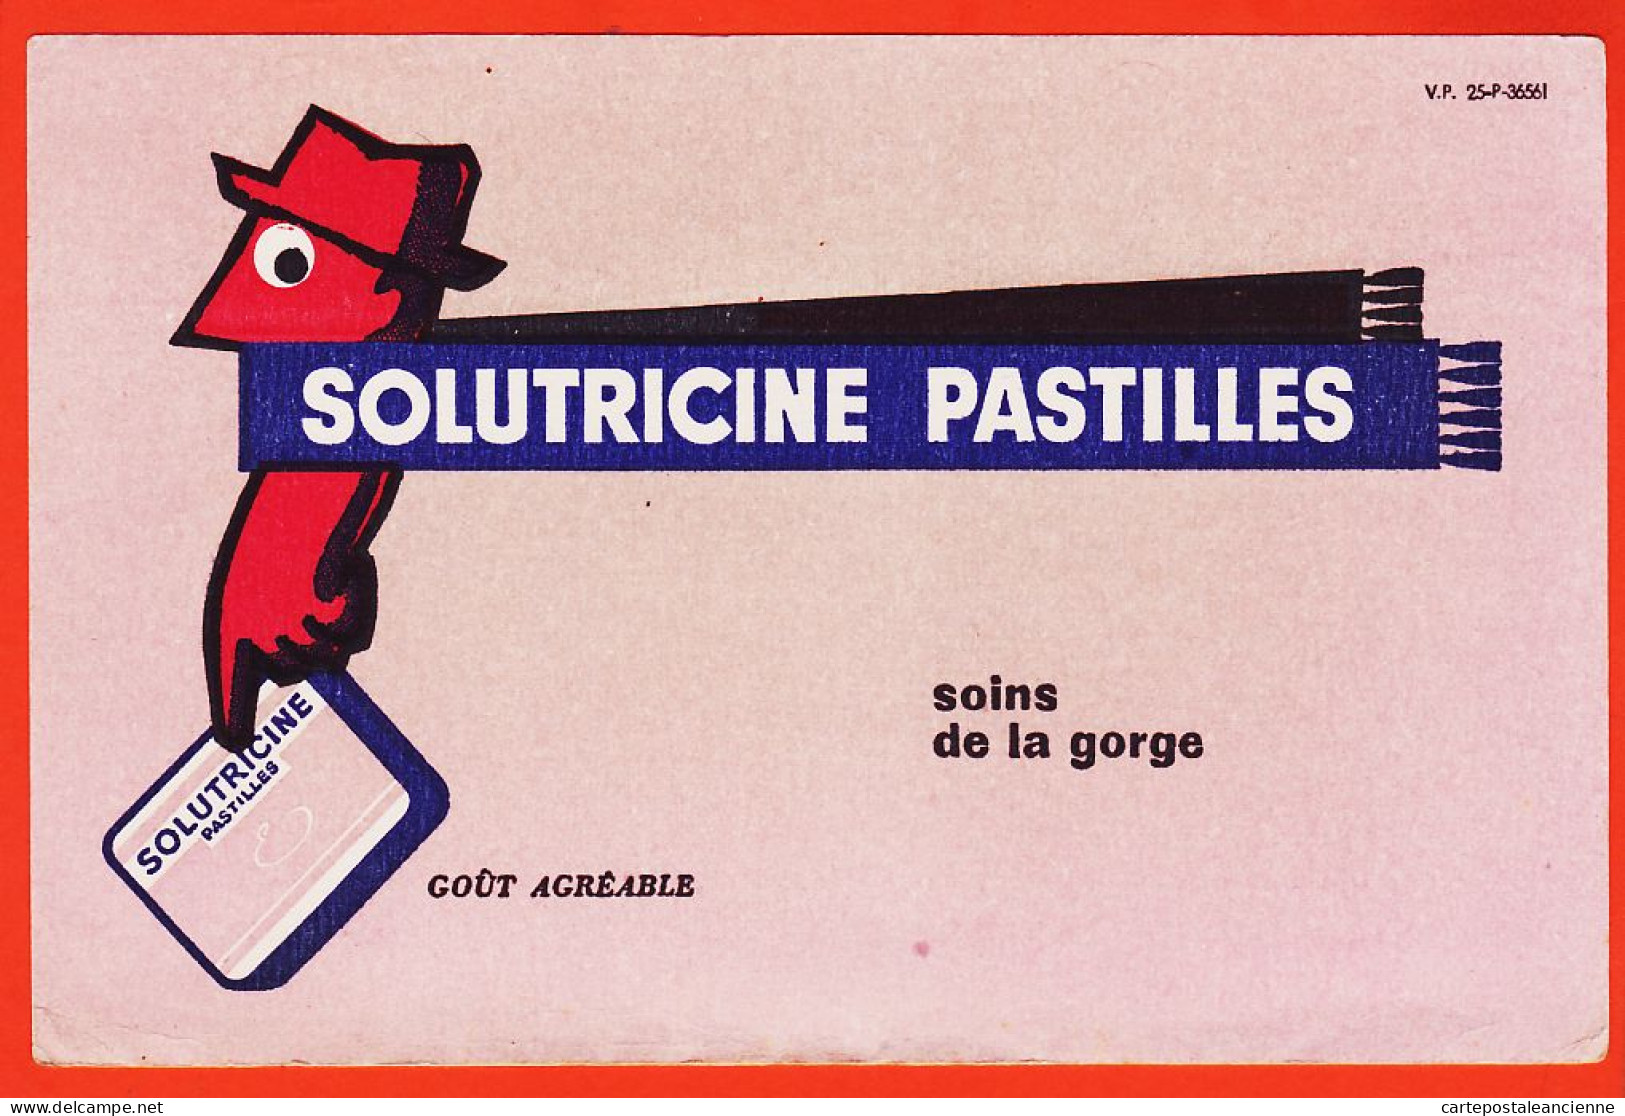 06151 / SOLUTRICINE Pastilles Soins De La Gorge Goût Agréable V-P 25-P-36561 Buvard-Blotter - Drogisterij En Apotheek